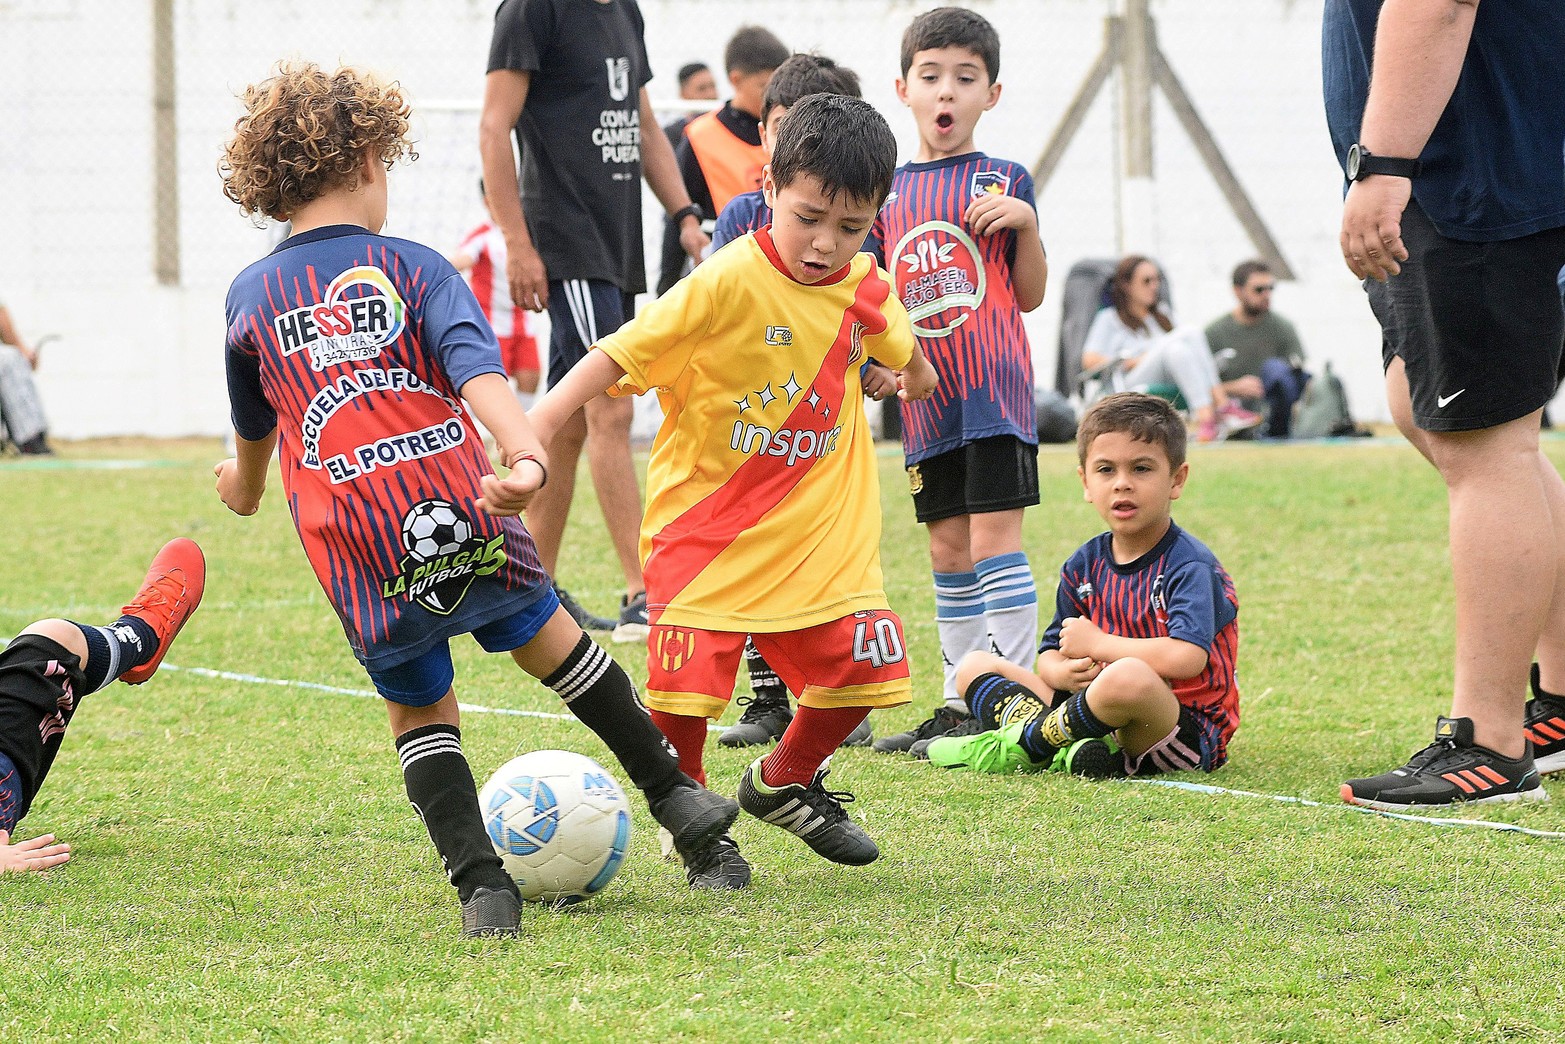 El predio Nery Pumpido, ubicado en el norte de la ciudad de Santa Fe, se convirtió en el escenario de la pasión y la emoción del fútbol infantil durante los Encuentros de Escuelitas de Fútbol.